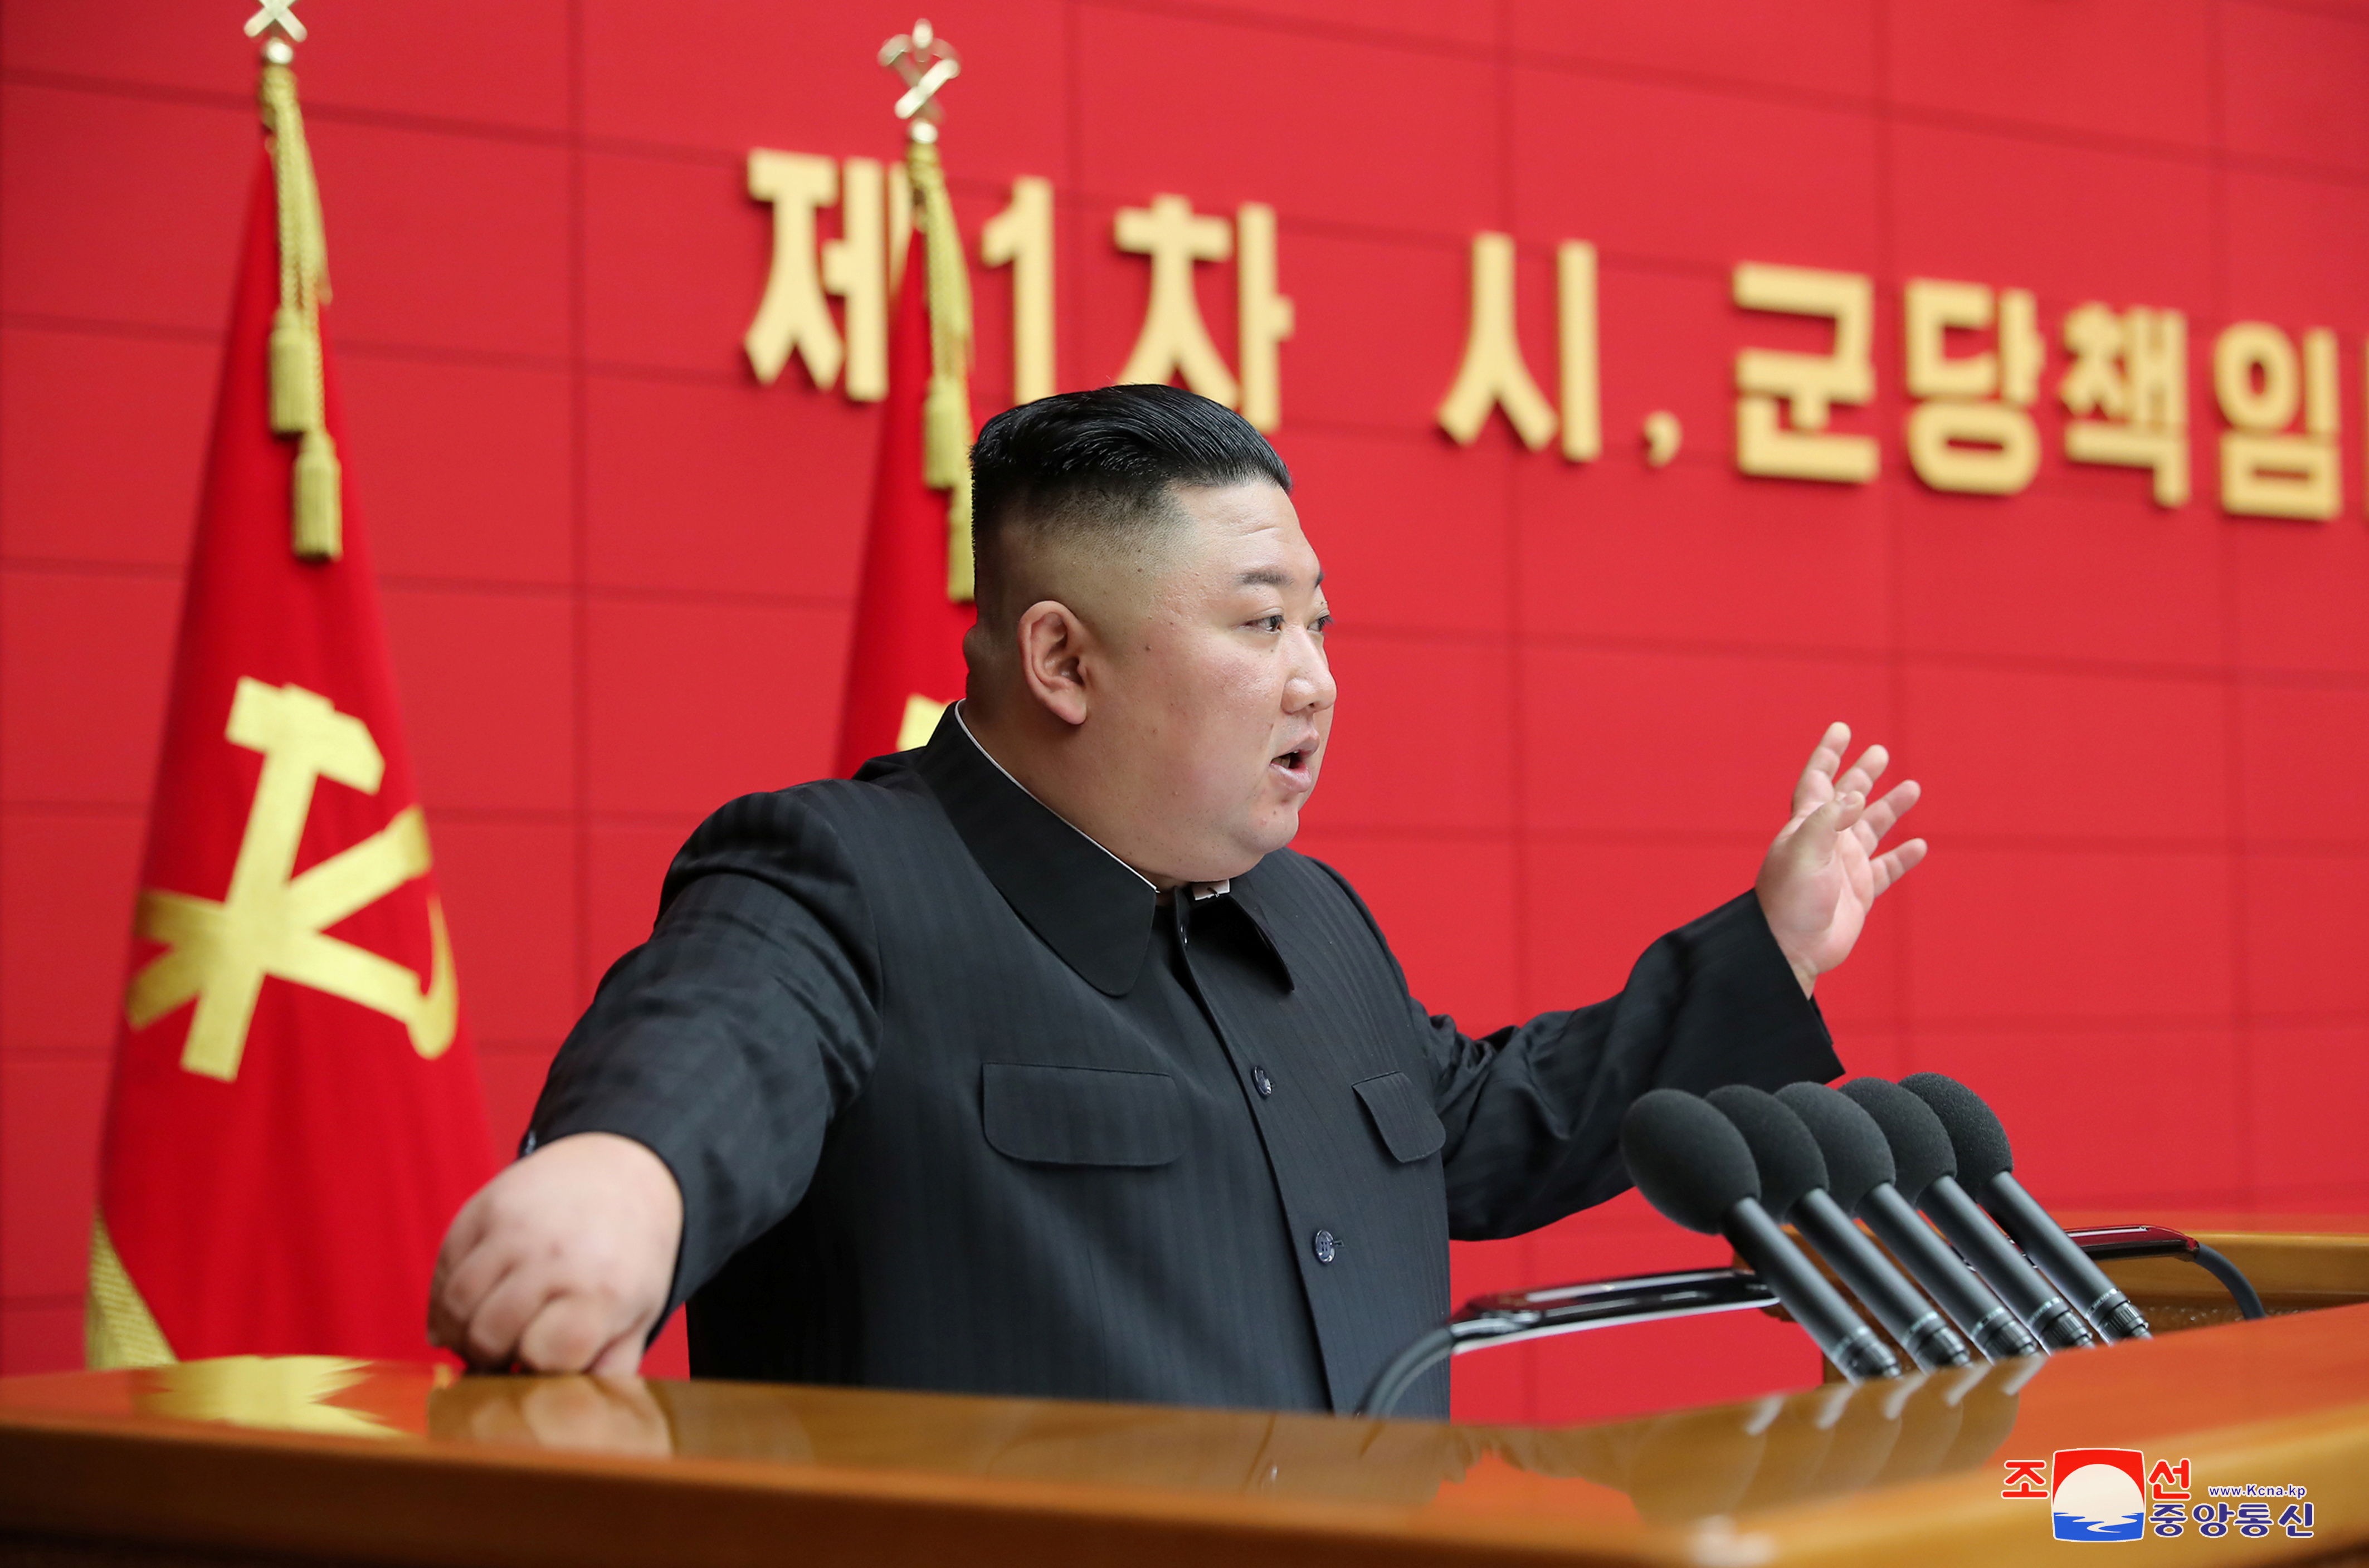 El dictador norcoreano Kim Jong-un en Pyongyang en una foto publicada el 7 de marzo de 2021 por la agencia de noticias estatal KCNA